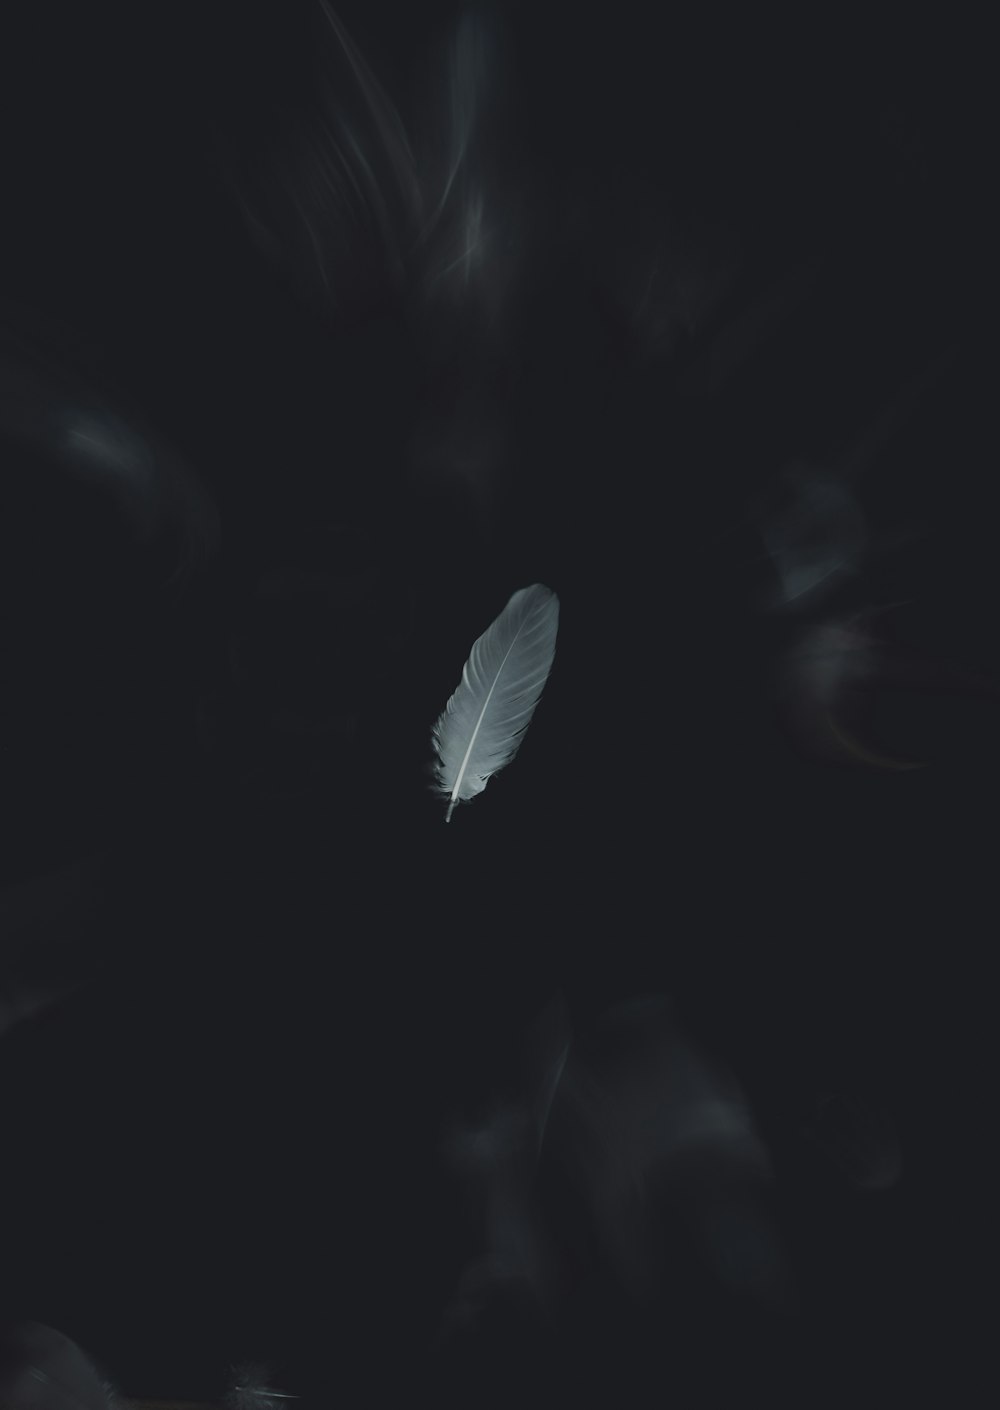 Eine weiße Feder, die im Dunkeln schwebt